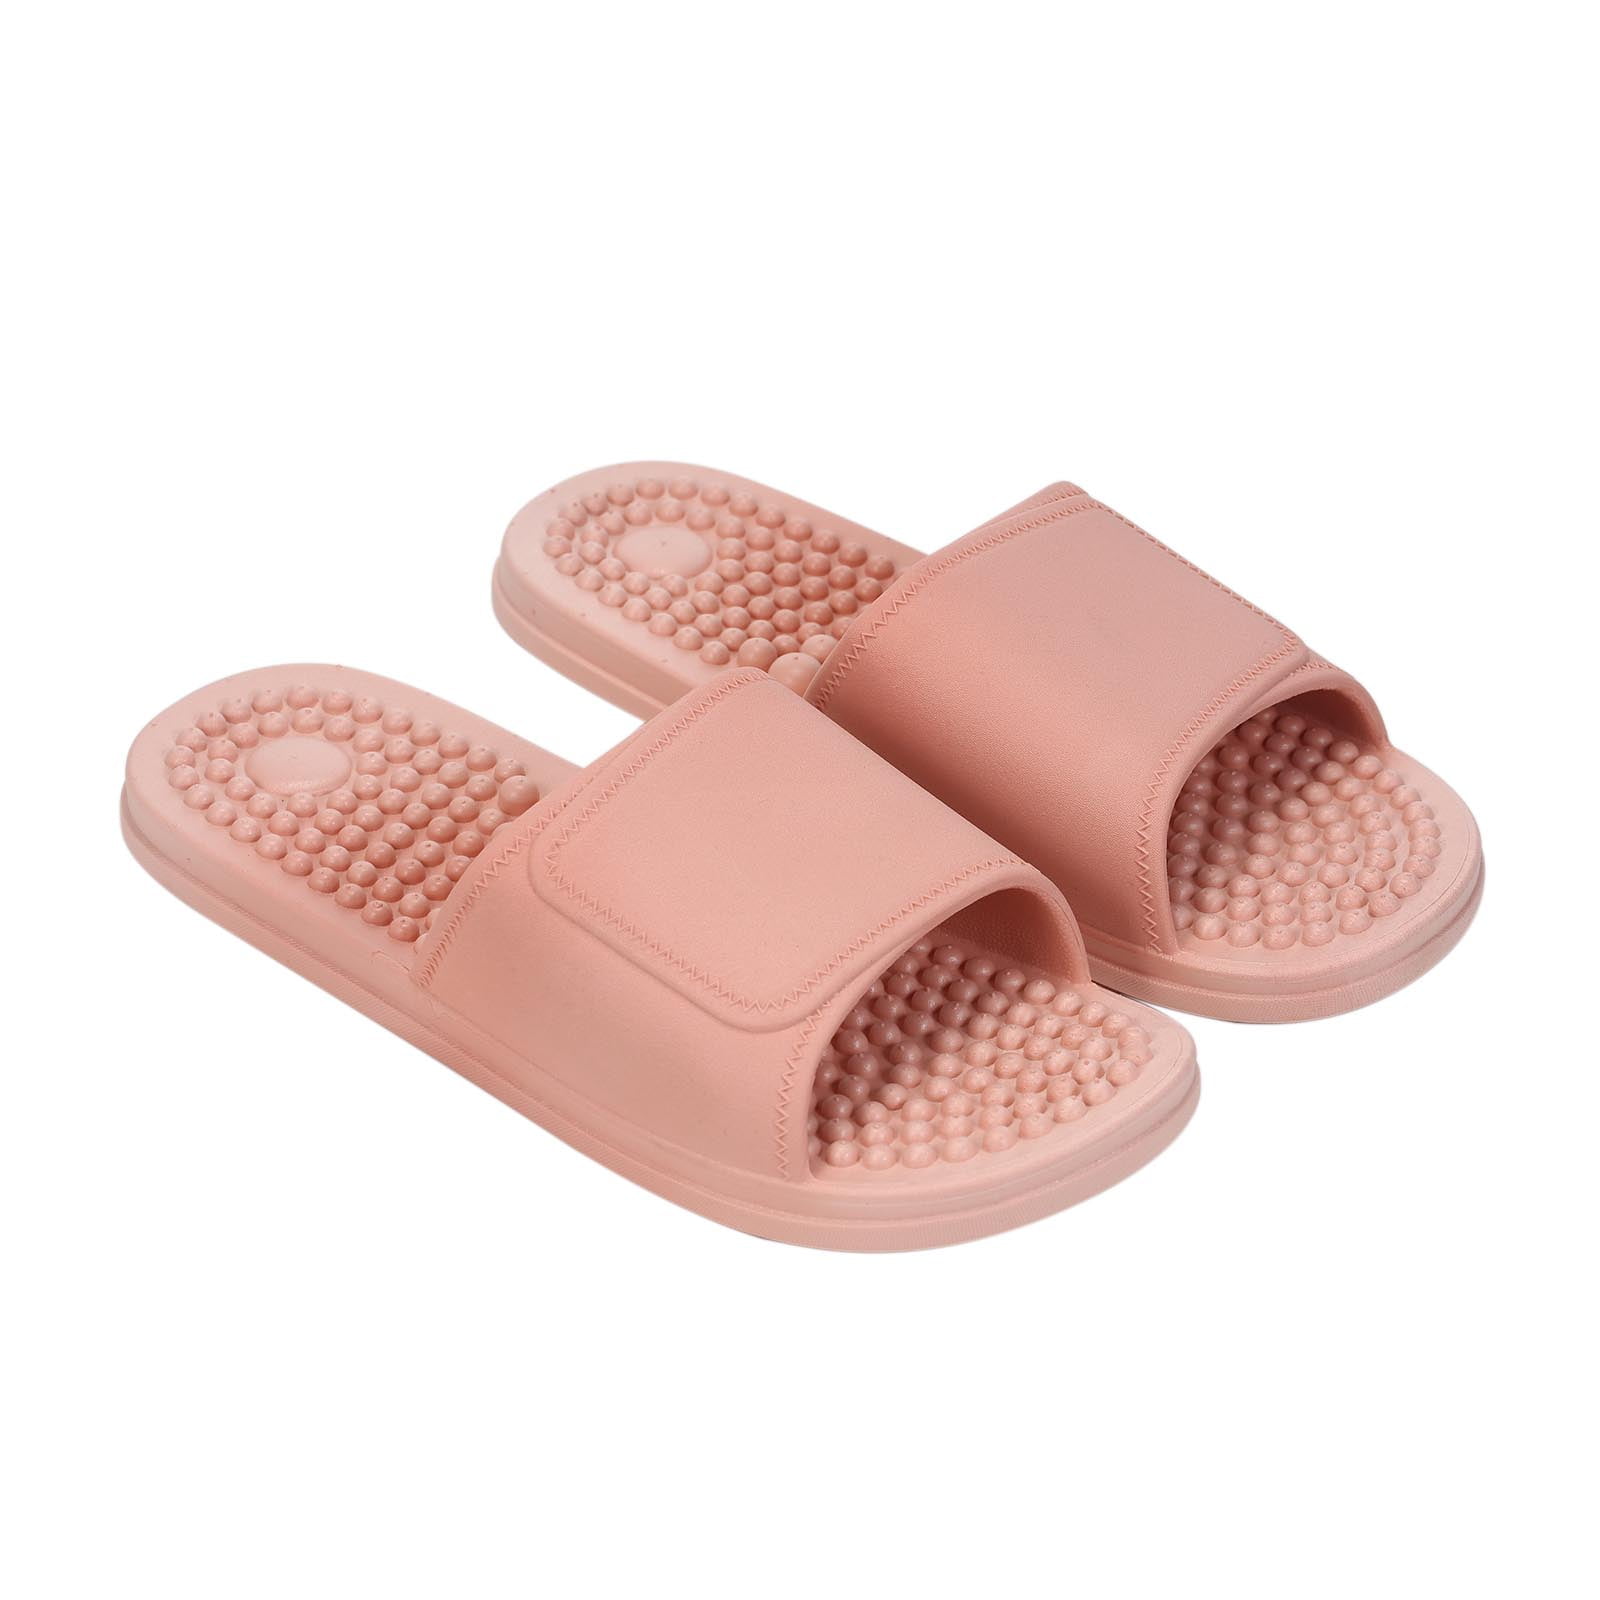 1/2 Price Version of Kenkoh Sandals